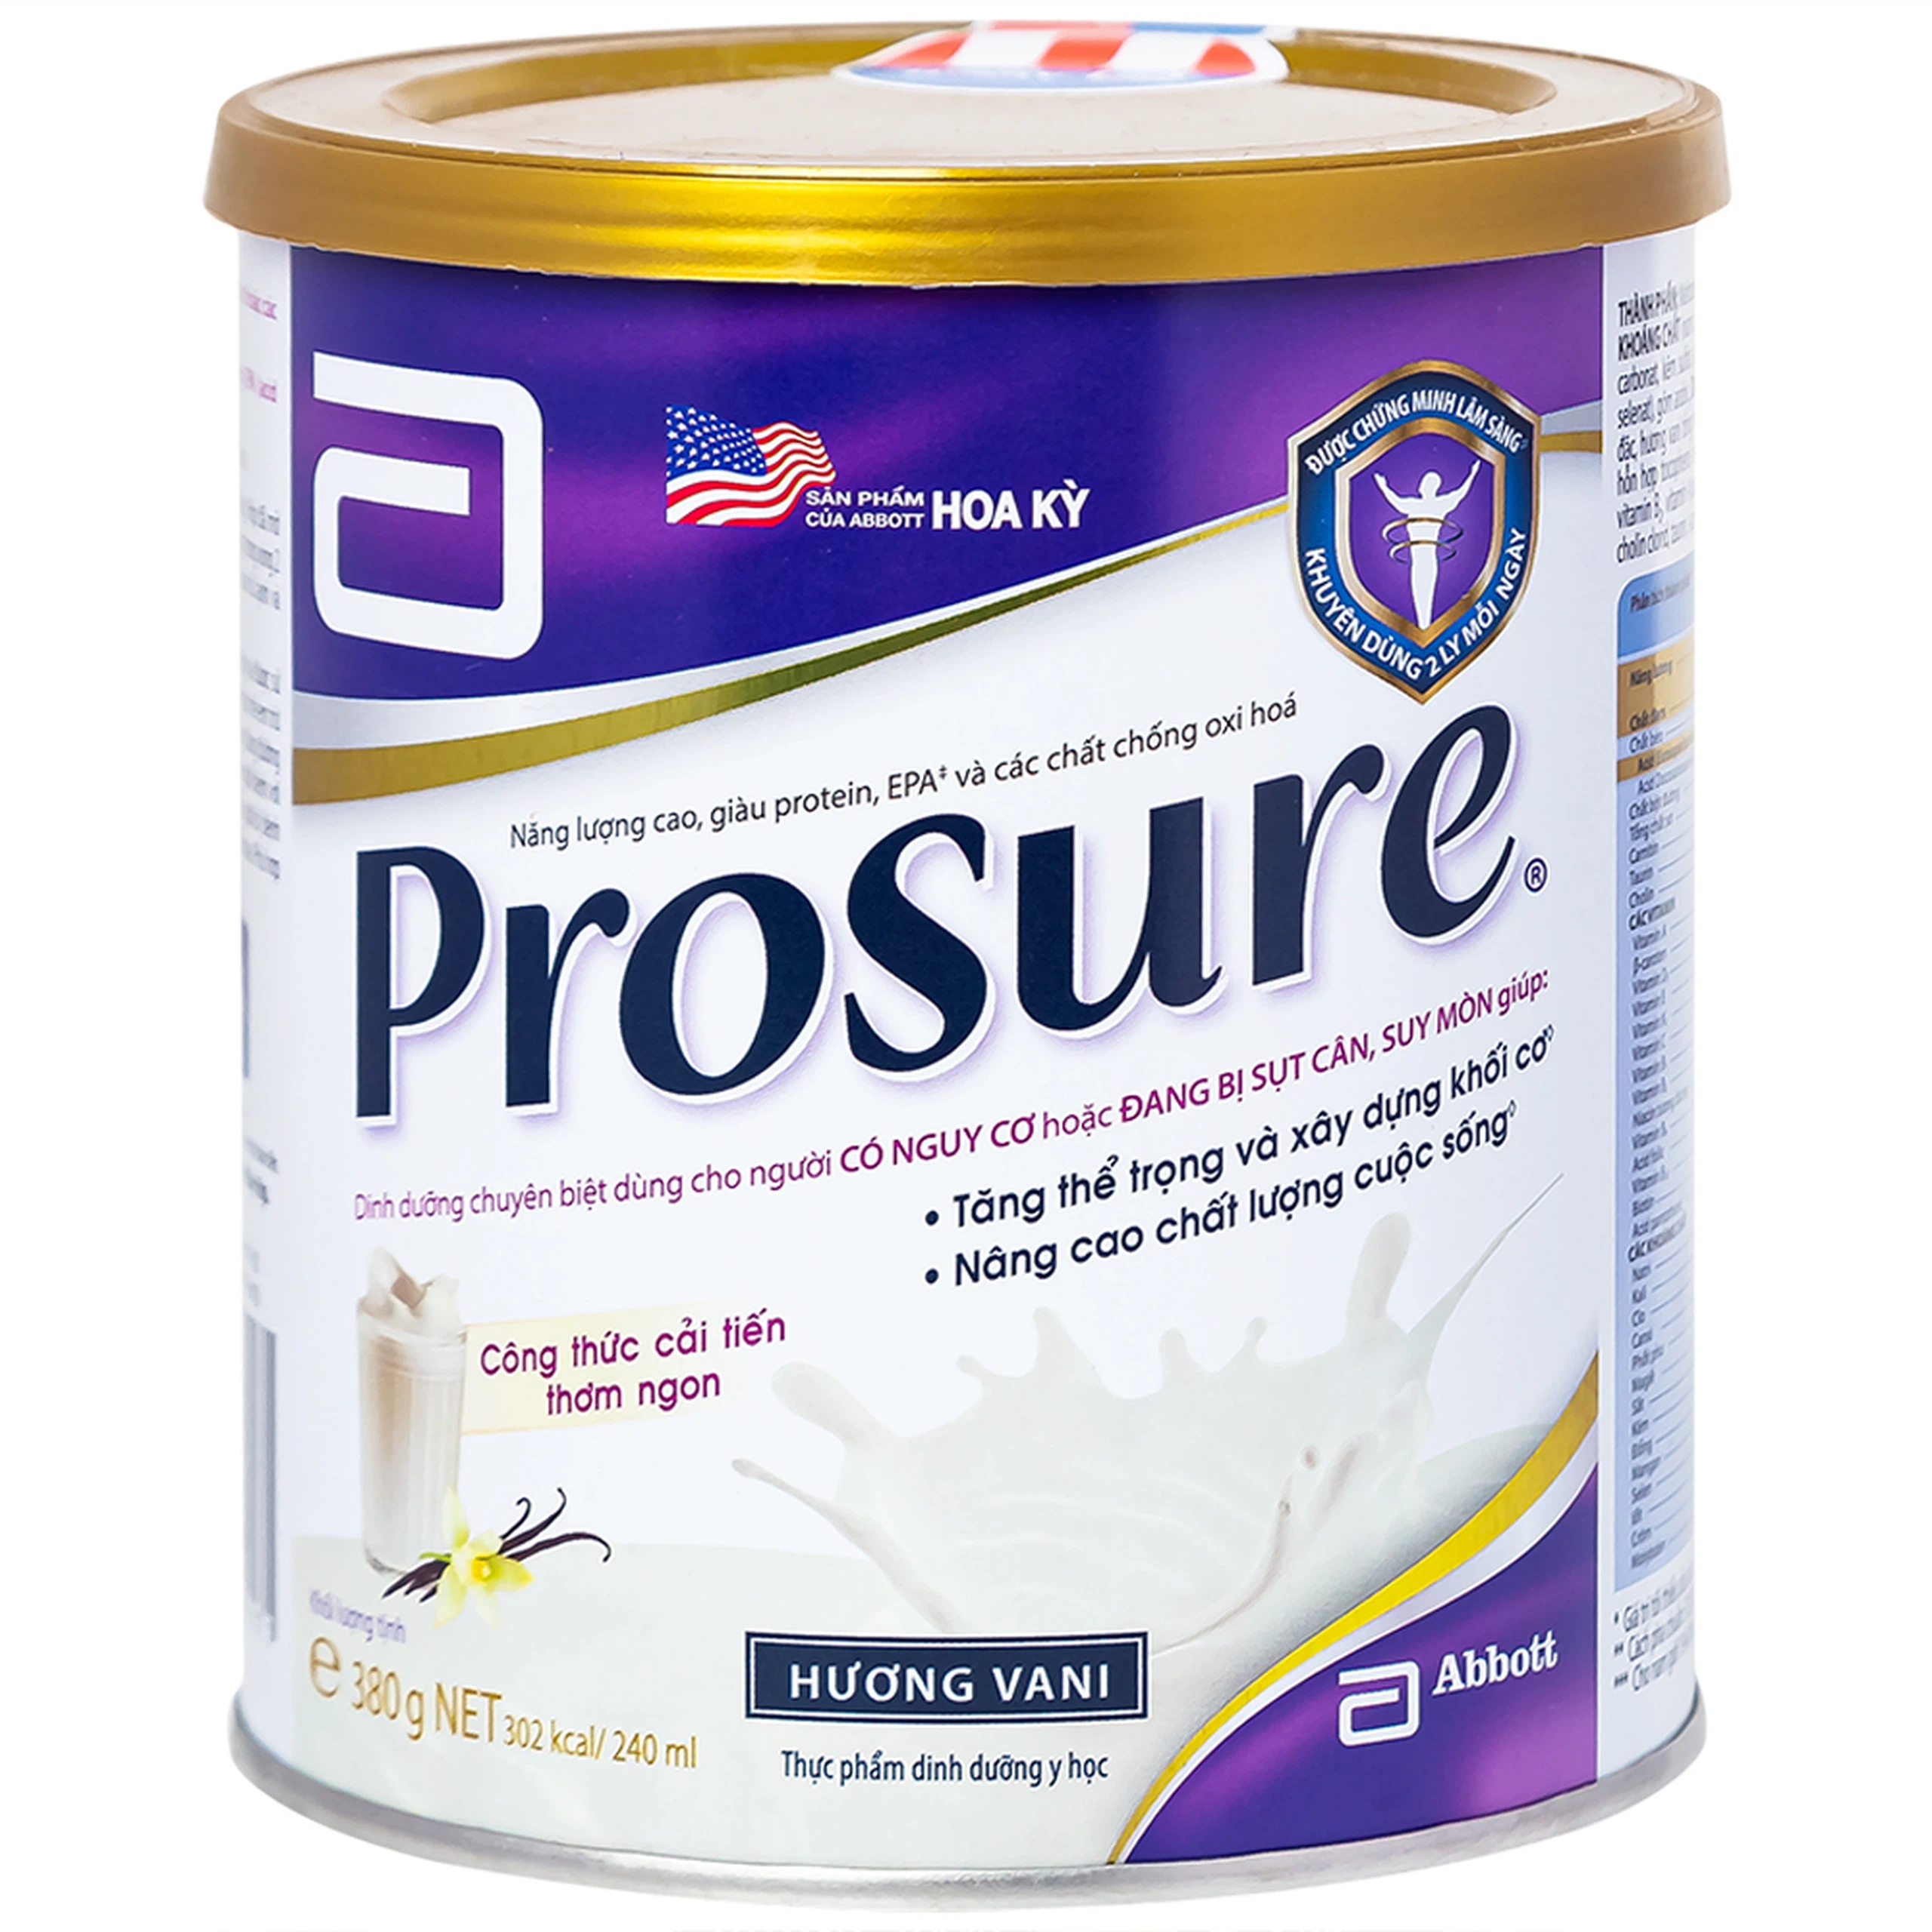 Sữa Prosure Abbott hương vani bổ sung dinh dưỡng chuyên biệt cho người đang sụt cân (380g)